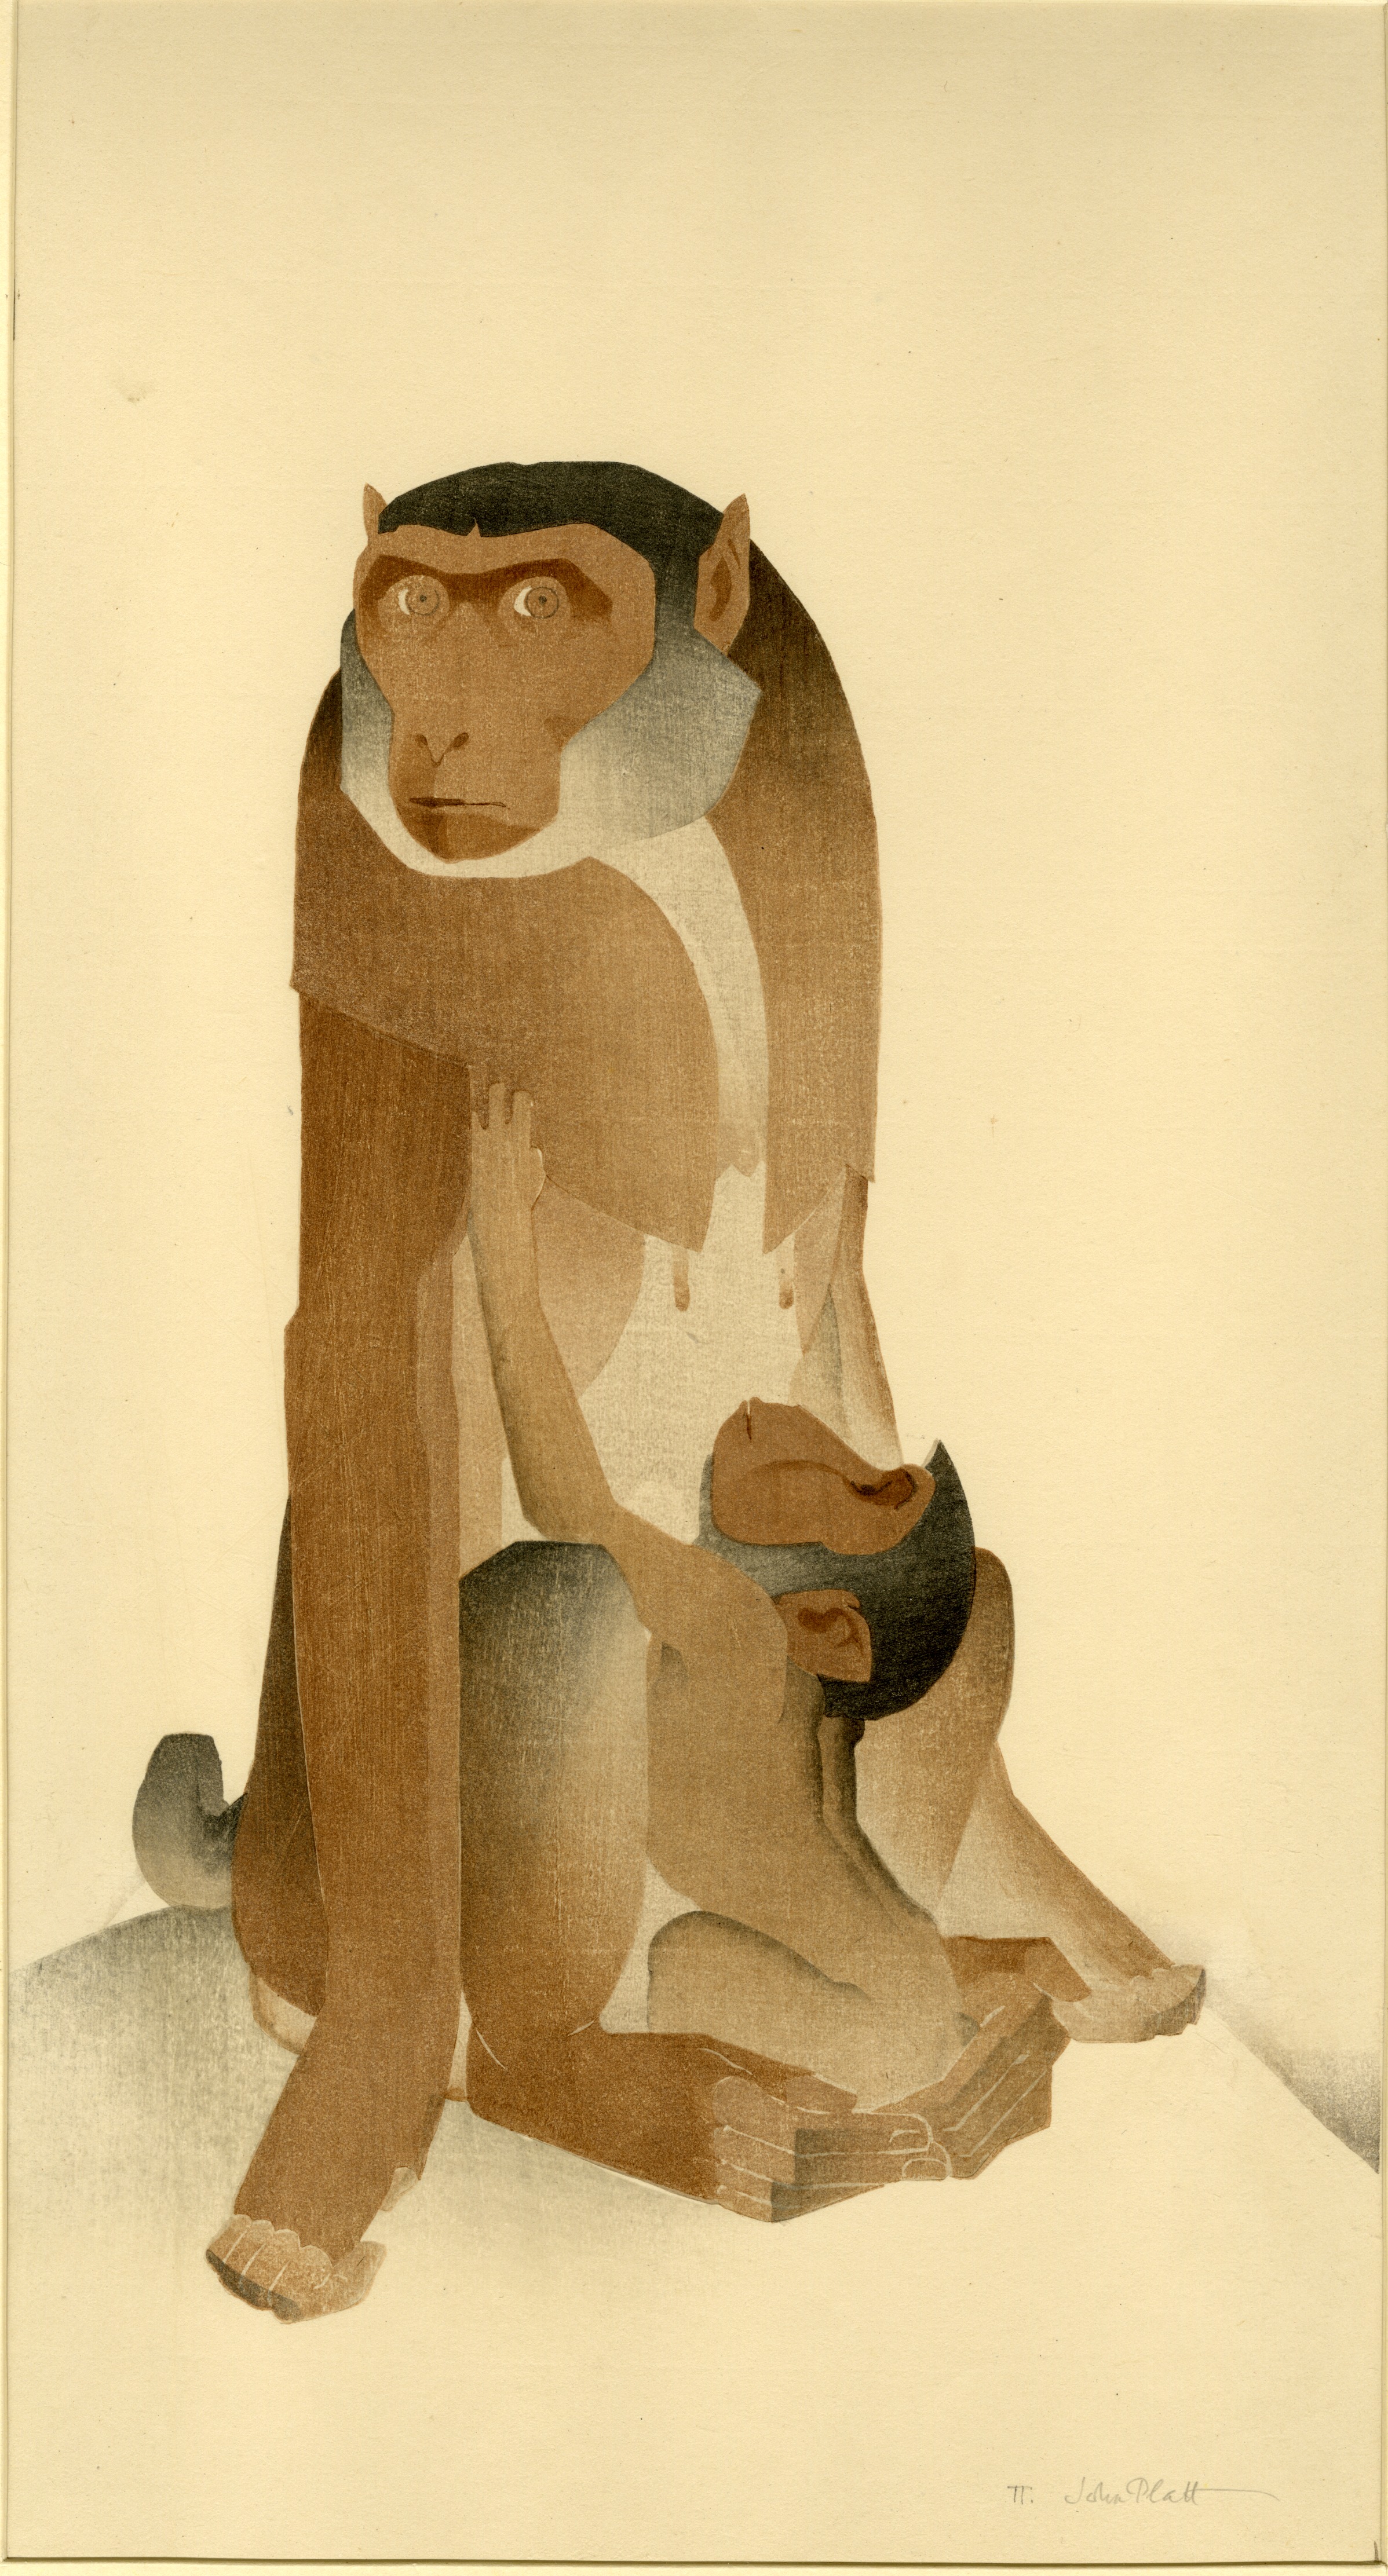 Two monkeys (1935)